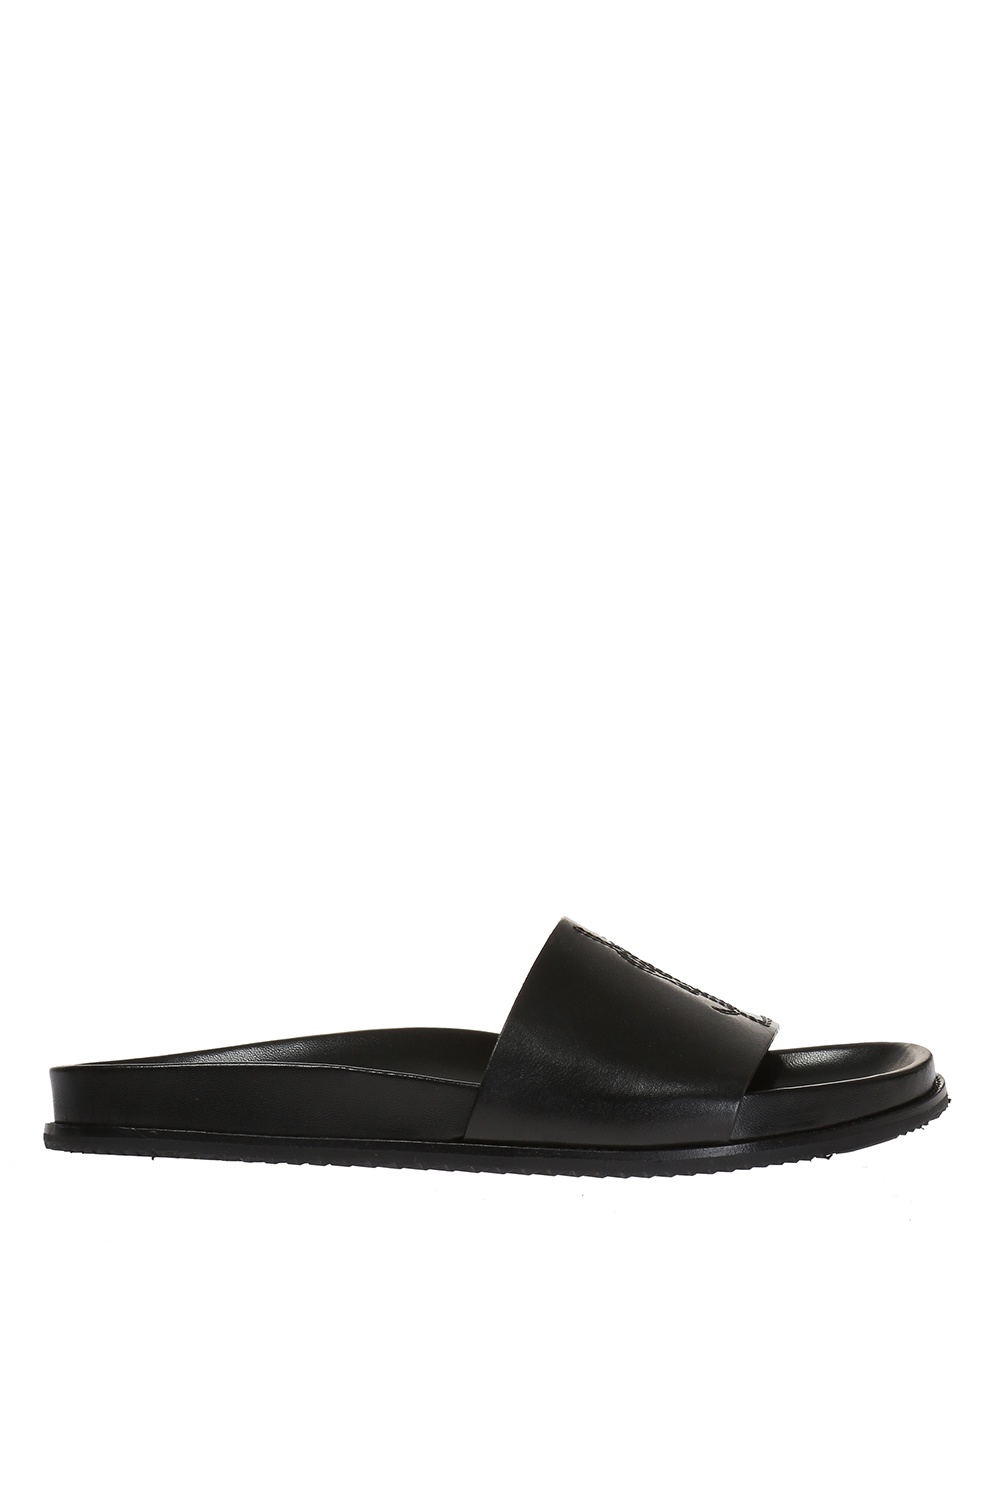 Saint Laurent 'Jimmy' slide sandals | Men's Shoes | Vitkac